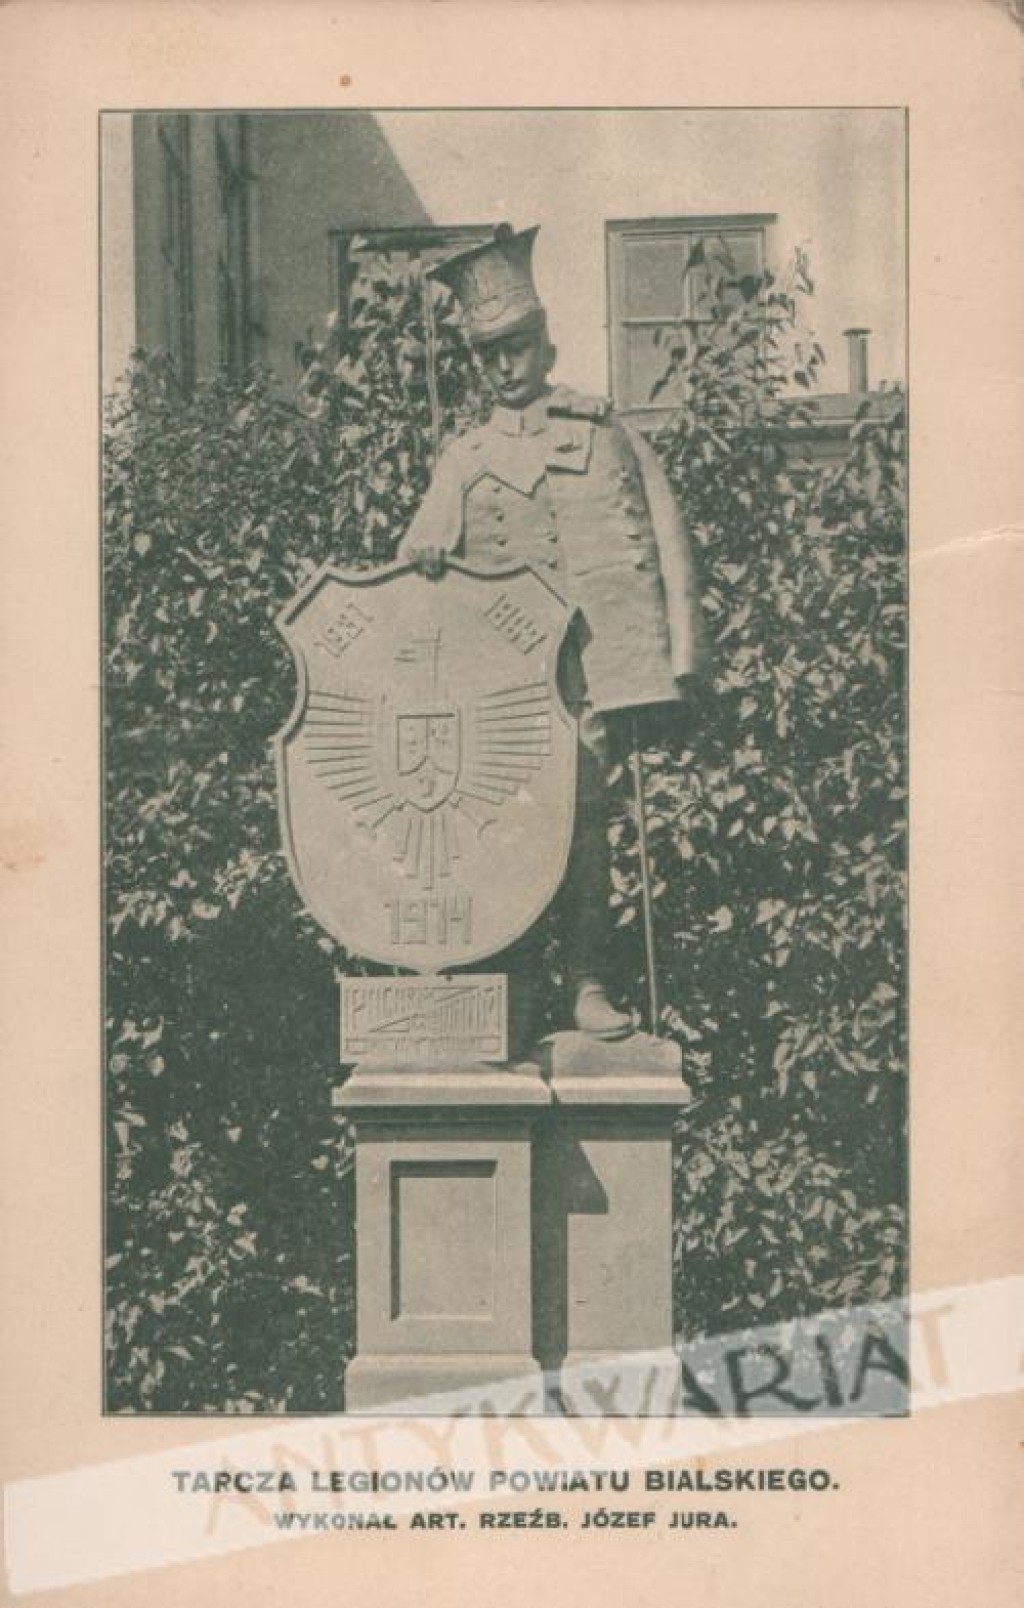 [pocztówka, ok. 1919] Tarcza Legionów Powiatu Bialskiego. Wykonał art. rzeźb. Józef Jura